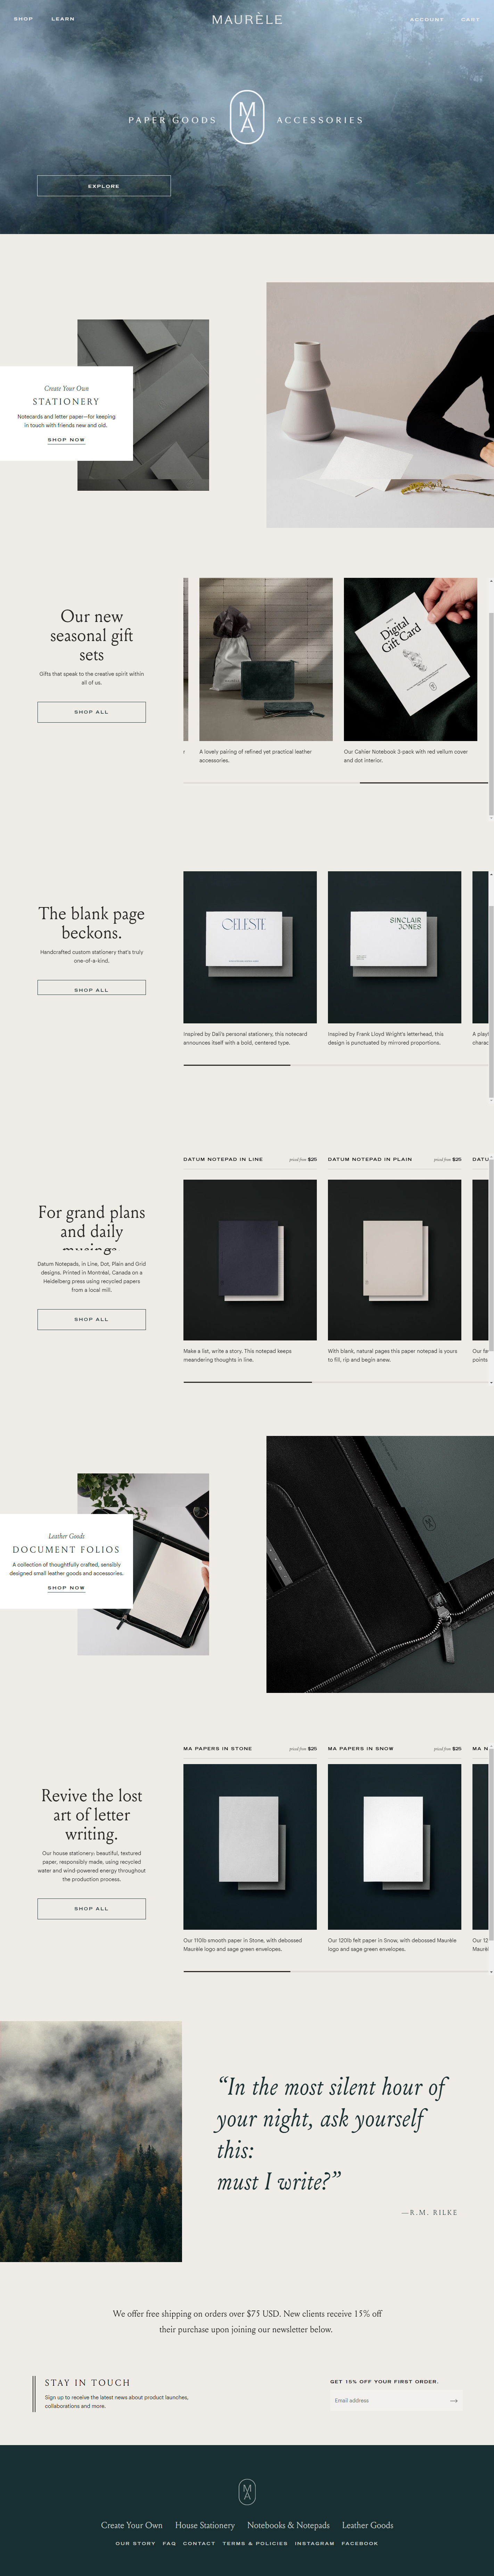 纸品文具品牌maurele网站设计